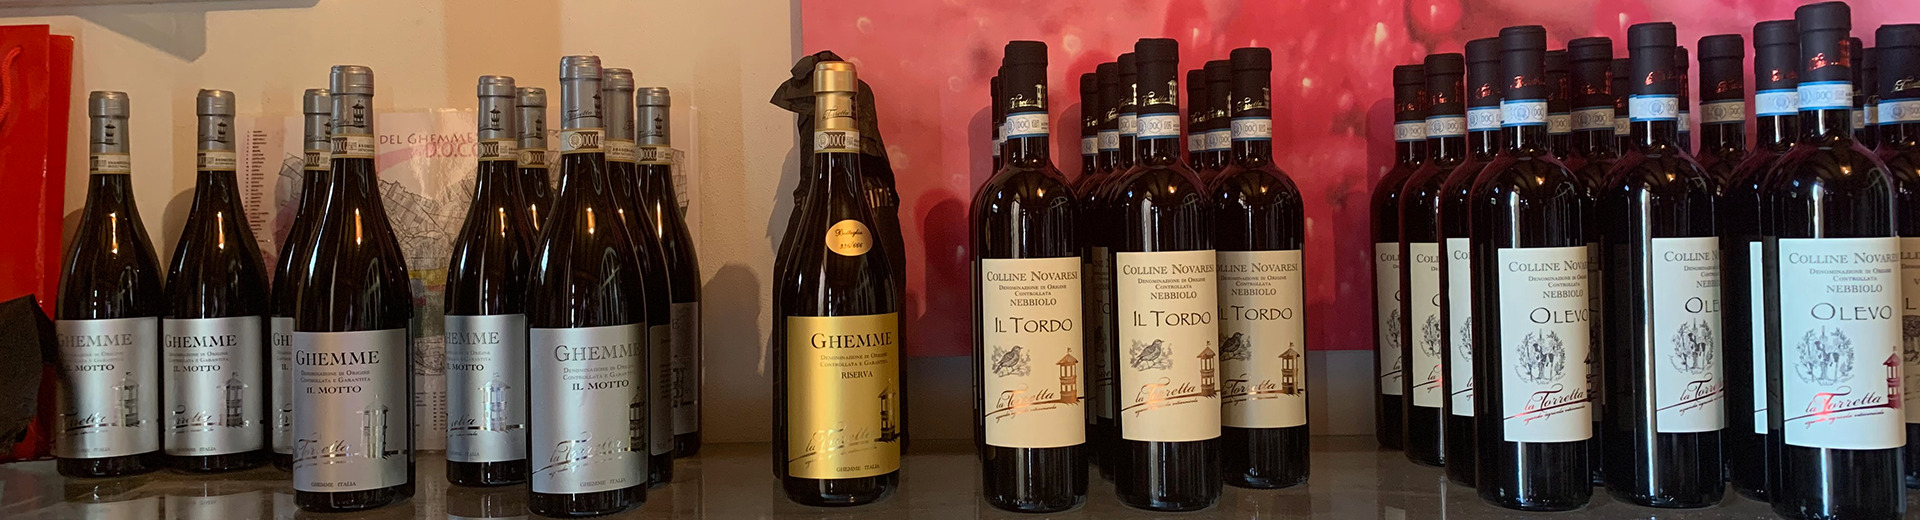 Wines of La Torretta